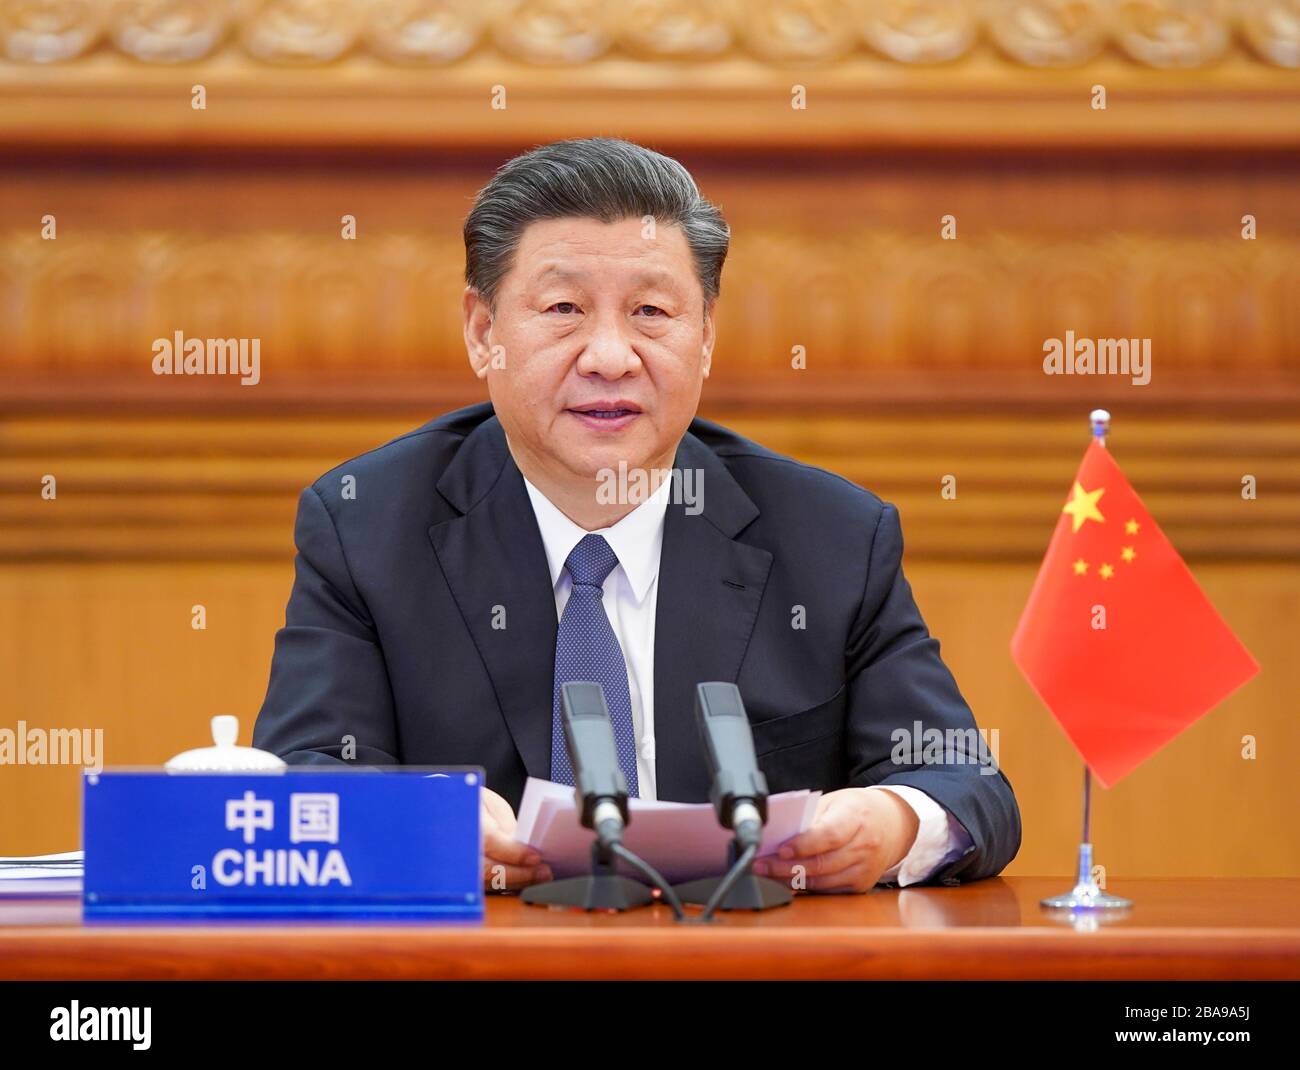 Pechino, Cina. 26 marzo 2020. Il presidente cinese Xi Jinping partecipa al vertice straordinario dei leader virtuali del G20 sul COVID-19 tramite collegamento video a Pechino, capitale della Cina, il 26 marzo 2020. Credit: Li Xueren/Xinhua/Alamy Live News Foto Stock